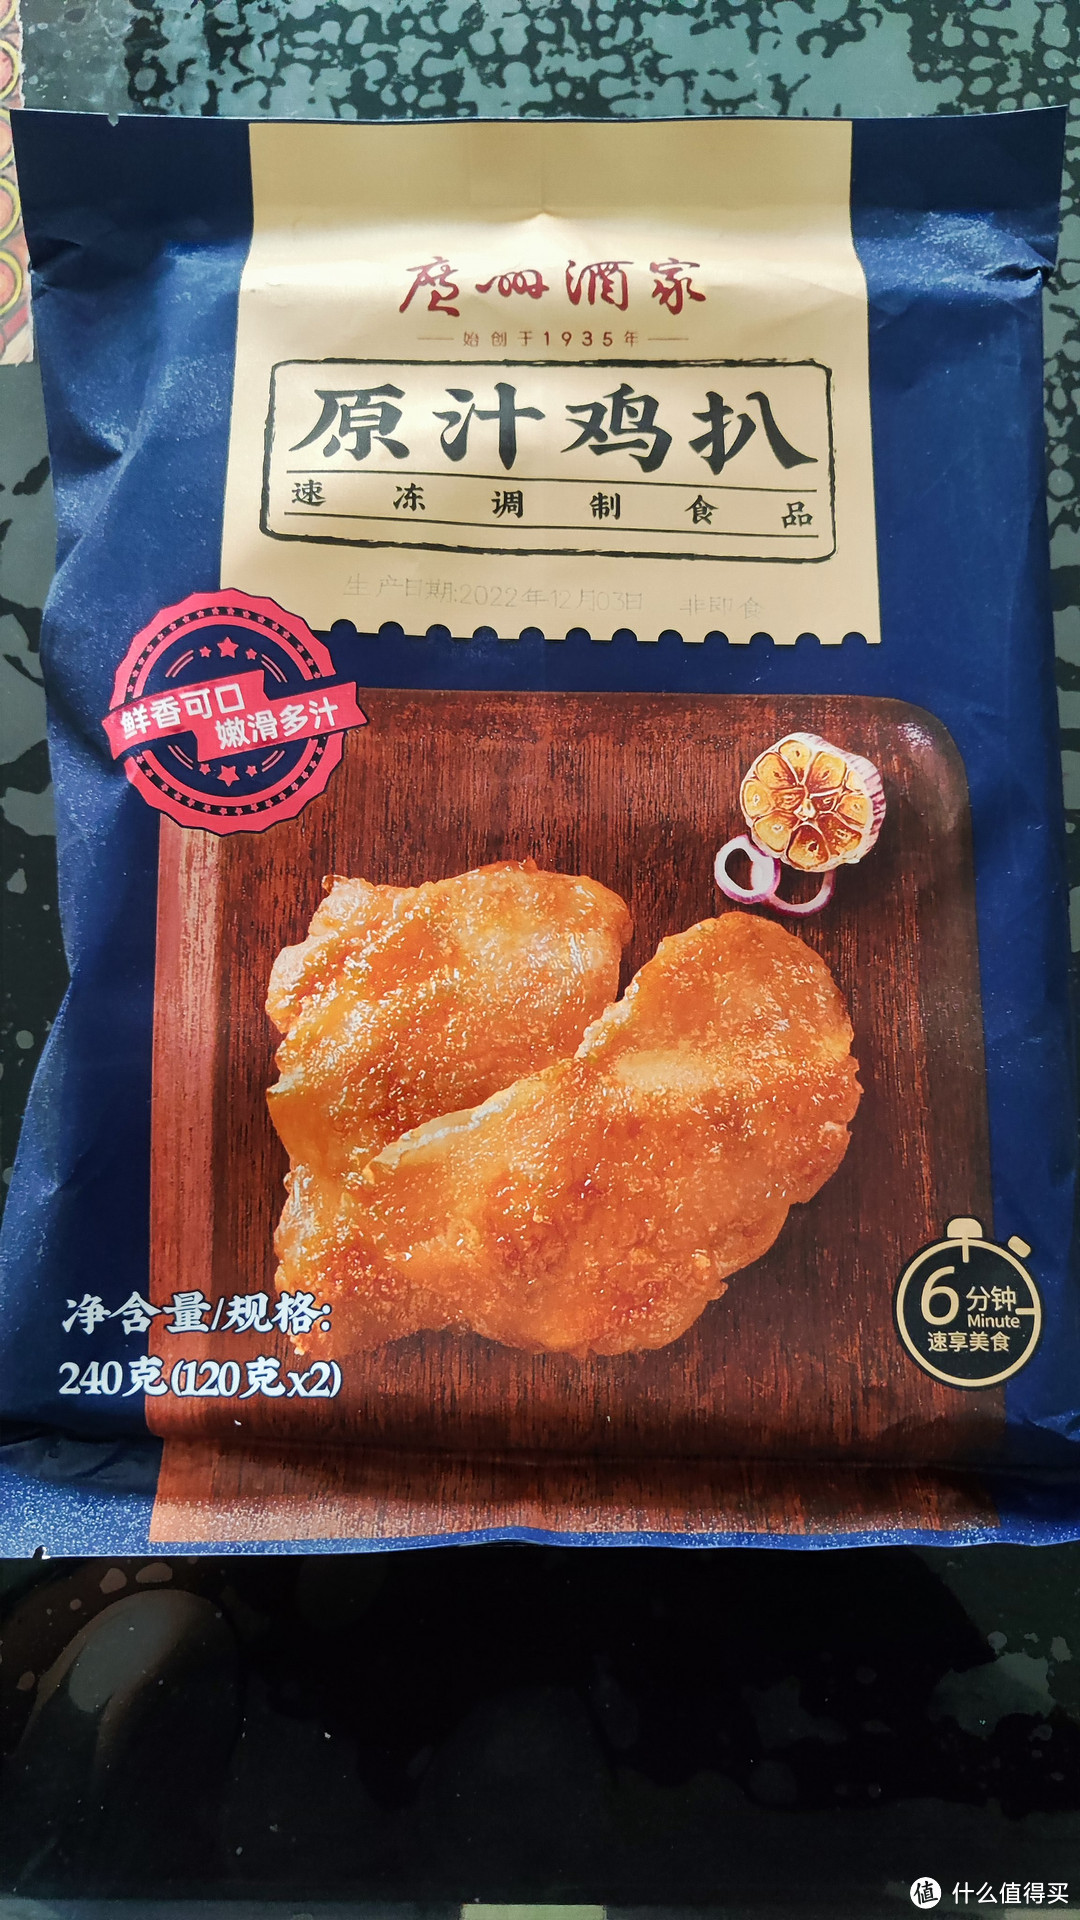 这款鸡扒值得一试，操作简单，口味不错。广州酒家鸡扒分享